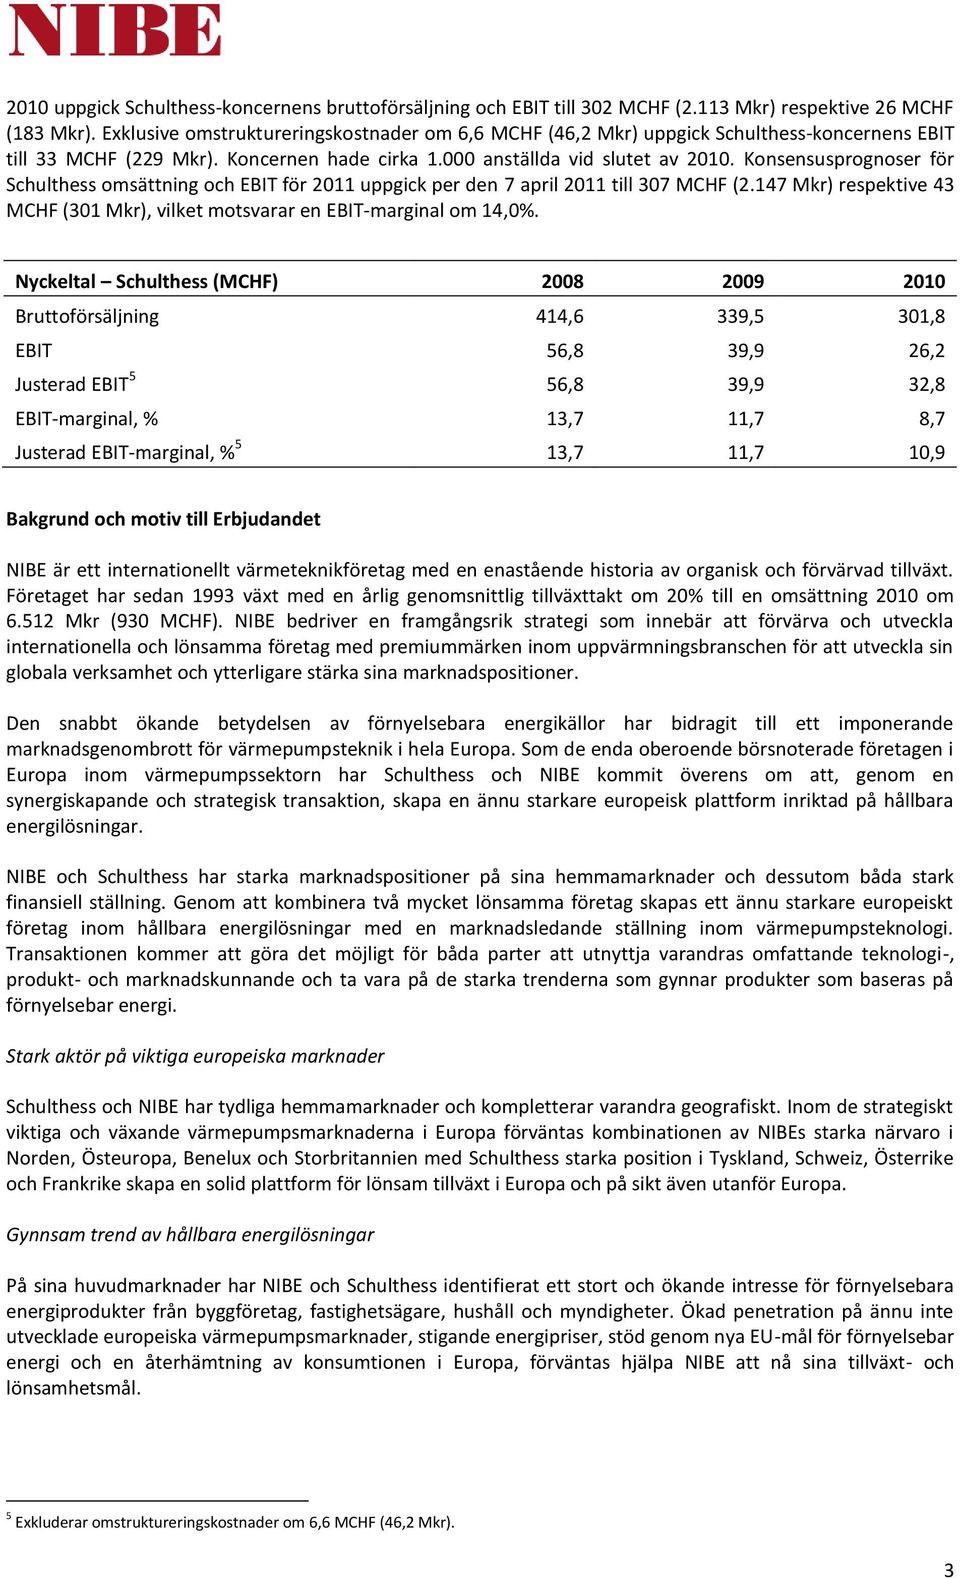 Konsensusprognoser för Schulthess omsättning och EBIT för 2011 uppgick per den 7 april 2011 till 307 MCHF (2.147 Mkr) respektive 43 MCHF (301 Mkr), vilket motsvarar en EBIT-marginal om 14,0%.